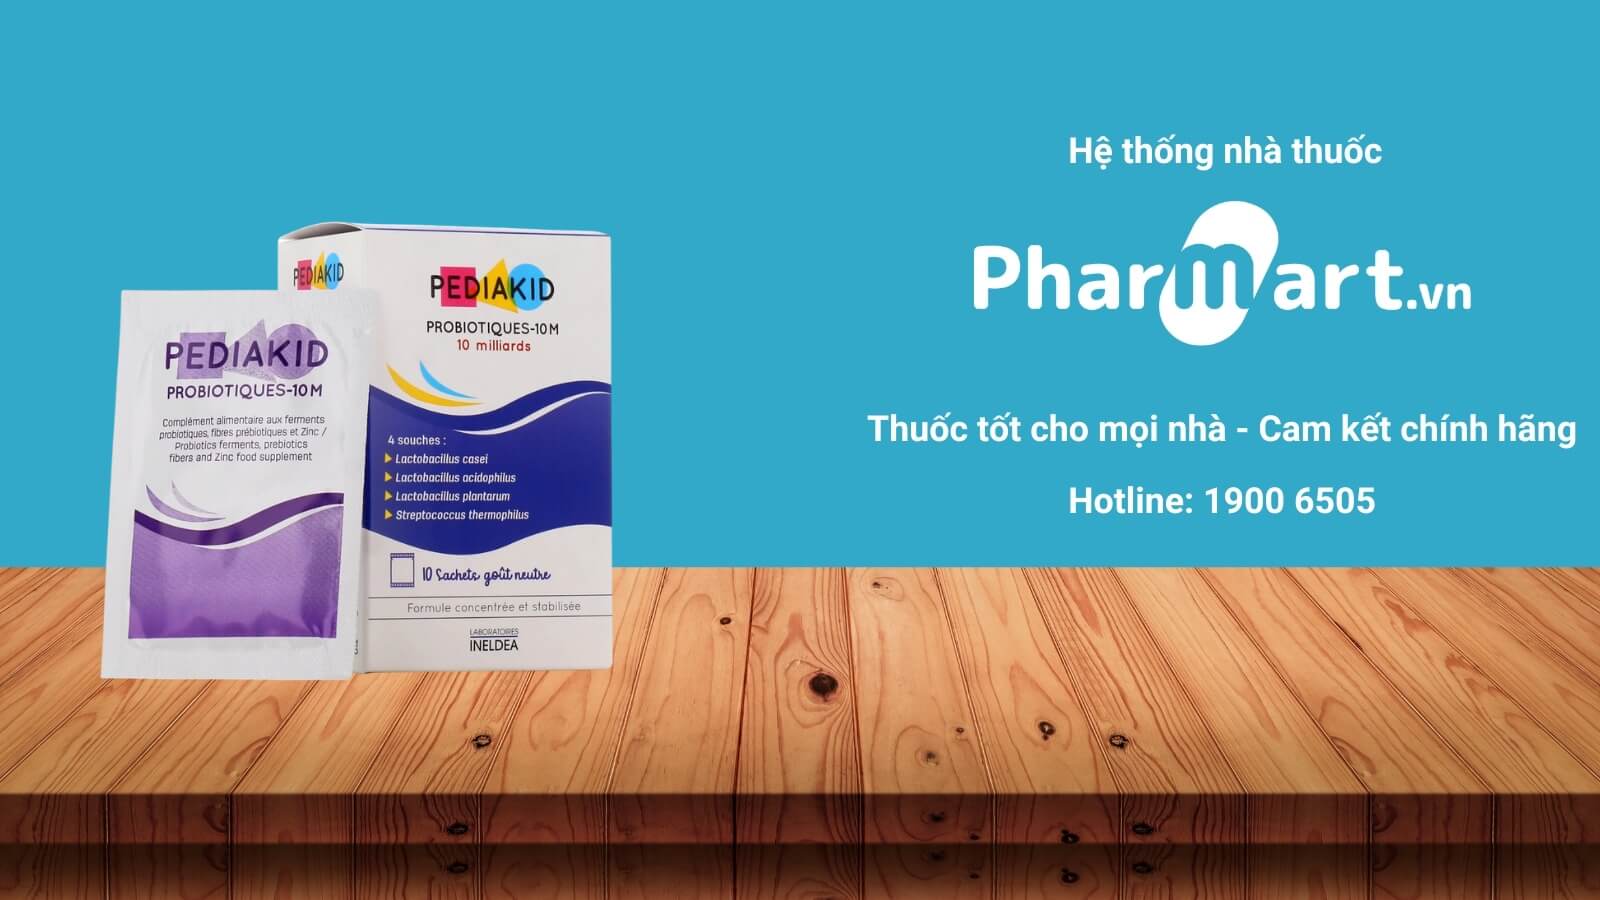 Mua PEDIAKID Probiotiques-10M chính hãng tại Pharmart.vn